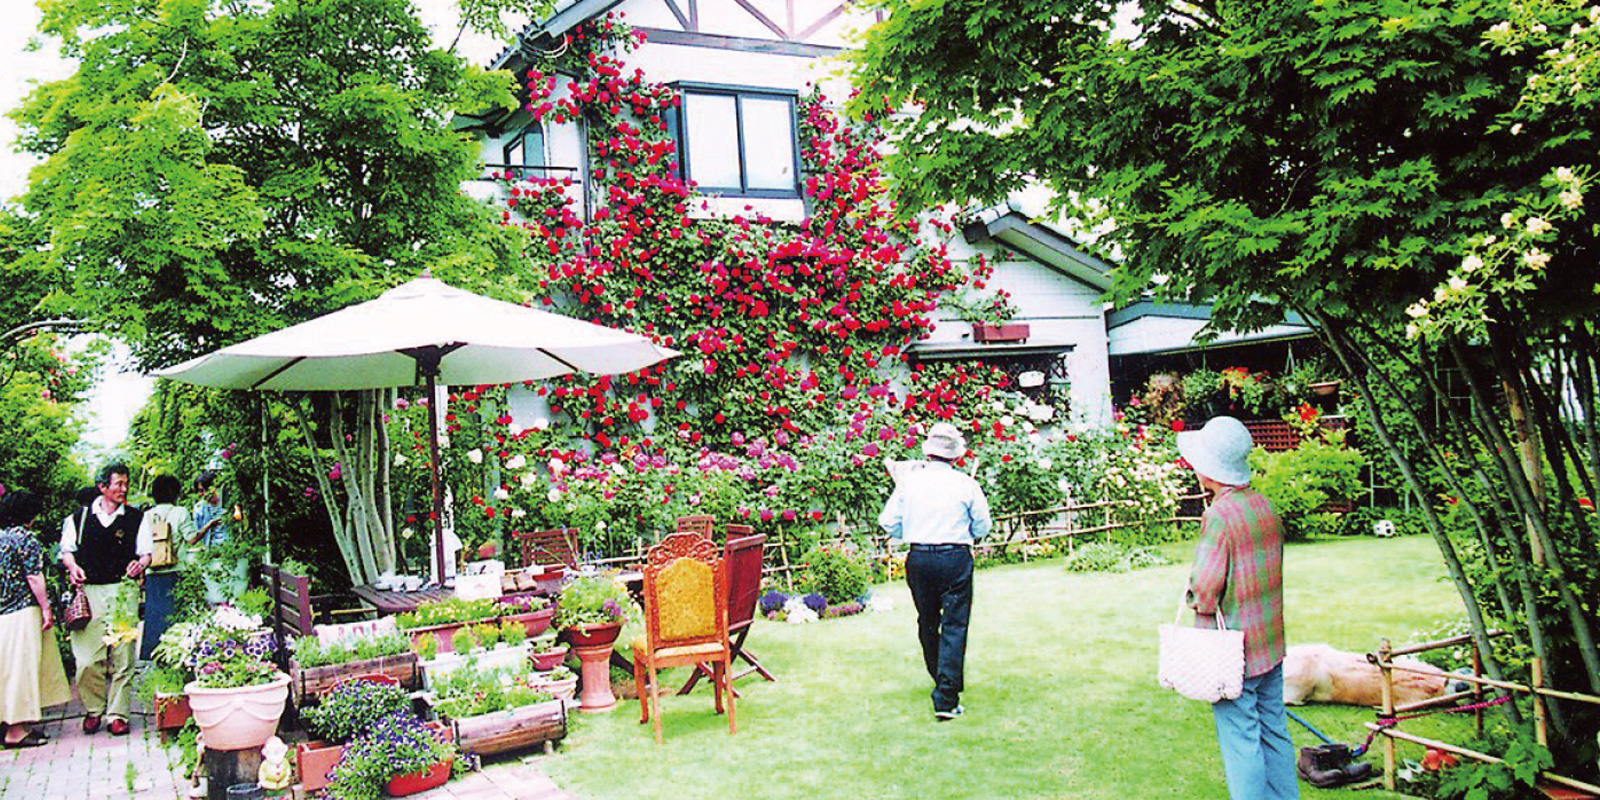 壁一面に広がる一株のバラと芝の庭 おぶせオープンガーデン